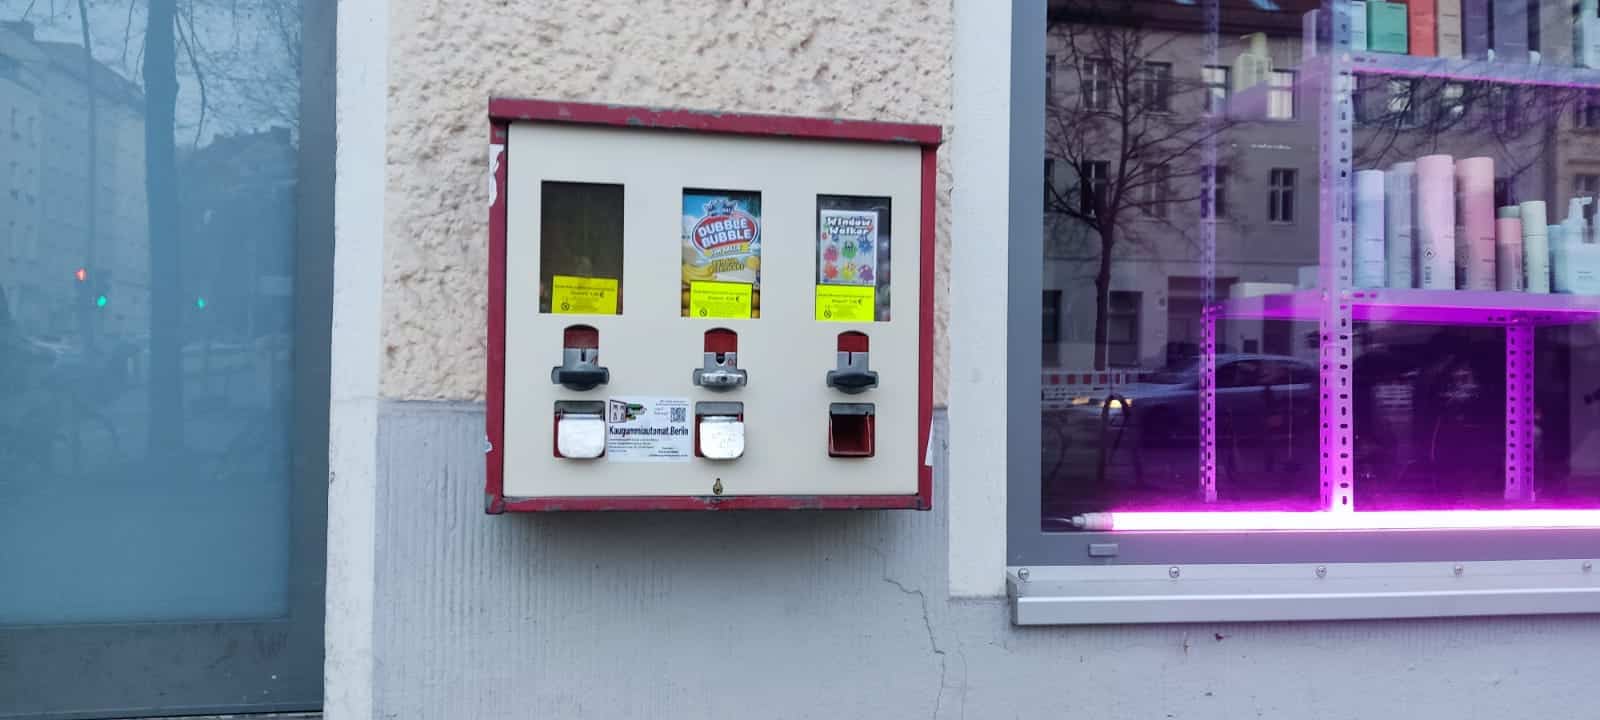 Kaugummiautomat 3 Schacht Berlin Prenzlauer Berg